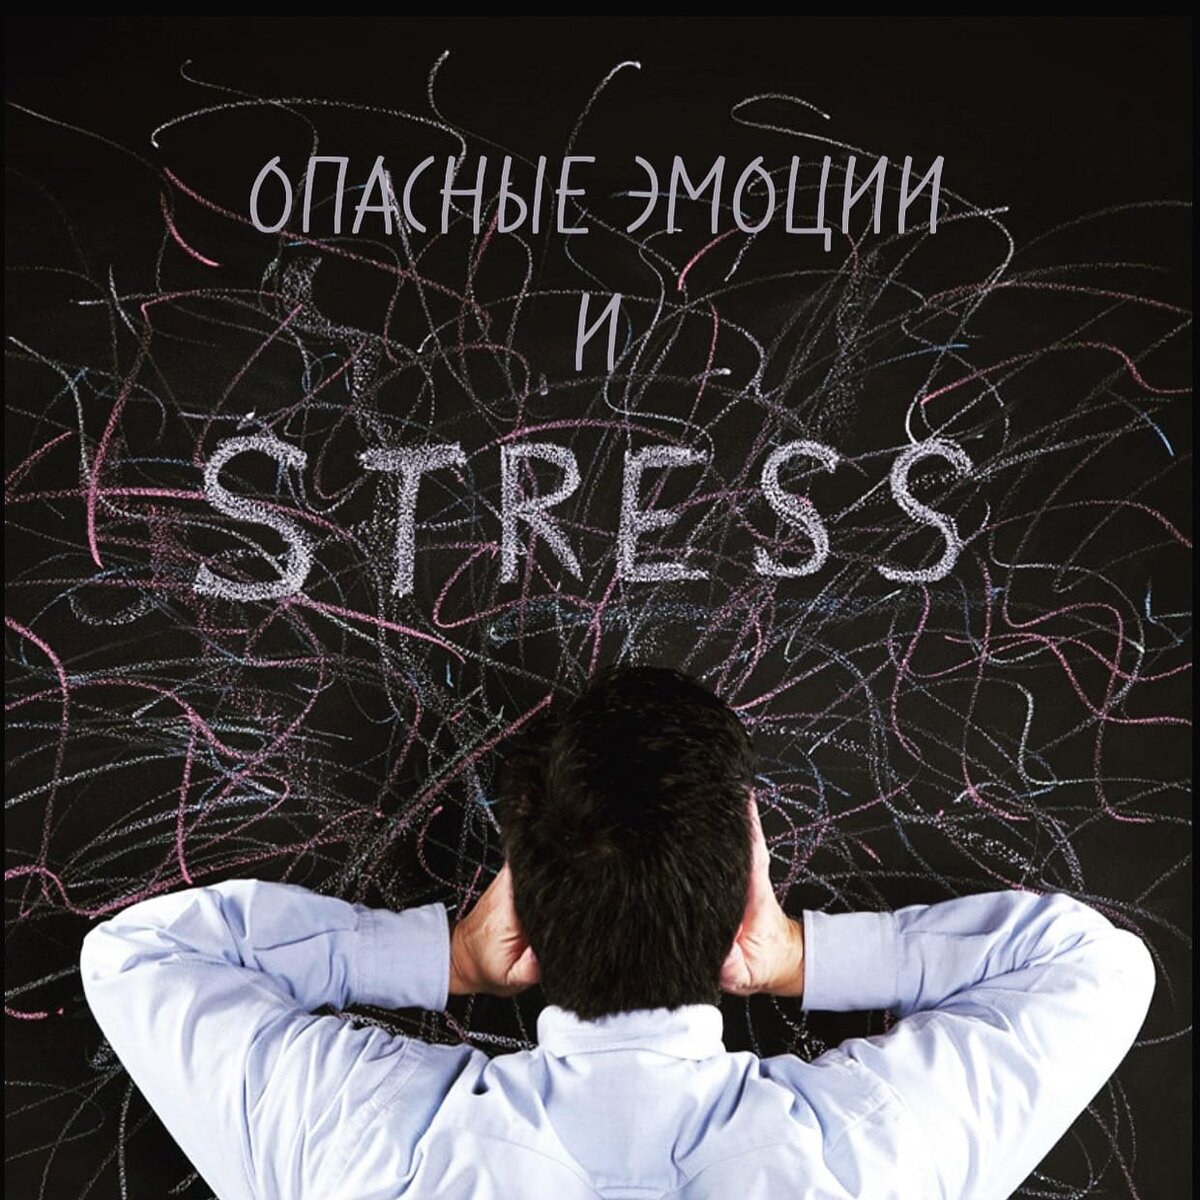 Стресс - это часть жизни, и если им правильно управлять, он может быть полезен. Но когда он становится хроническим, он может оказать негативное влияние как на физическое, так и на психическое здоровье.